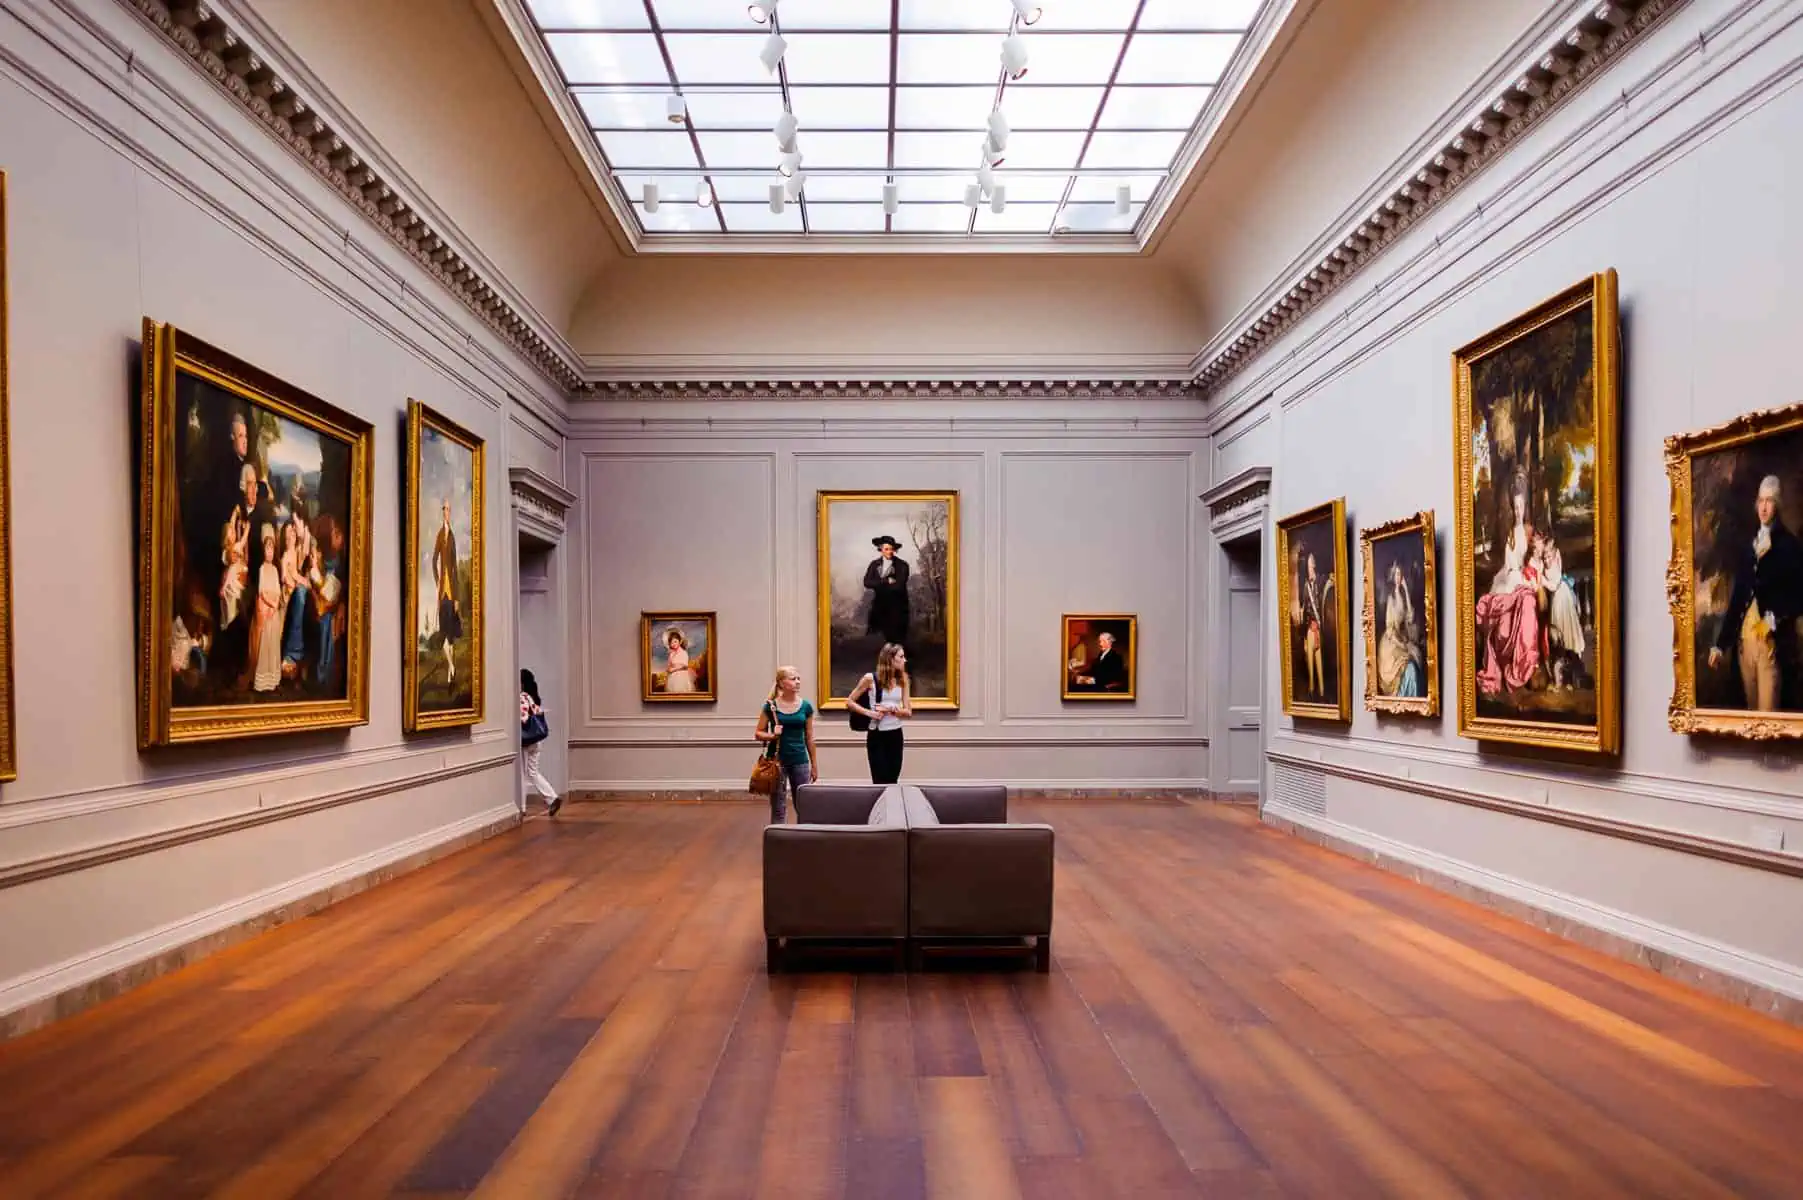 Desfiguran una Exhibición de Arte en la Galería Nacional de Arte de Washington